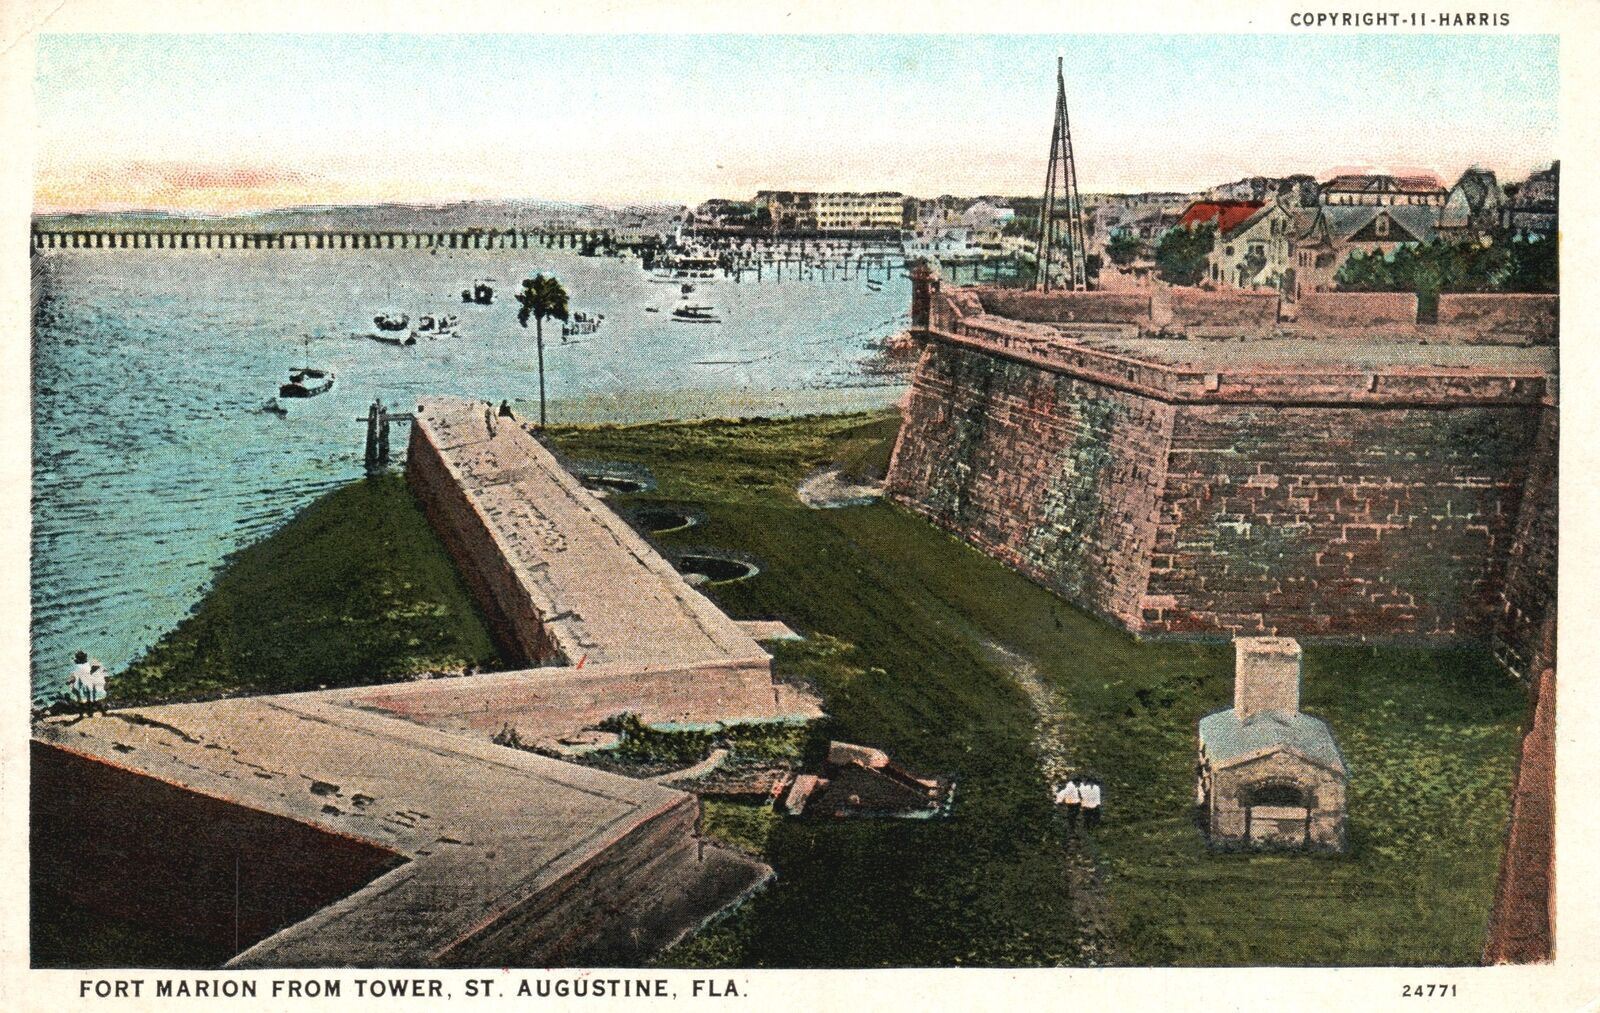 Vintage Postcard Fort Marion Tower Hotshot Oven St. Augustine Florida WJ Harris